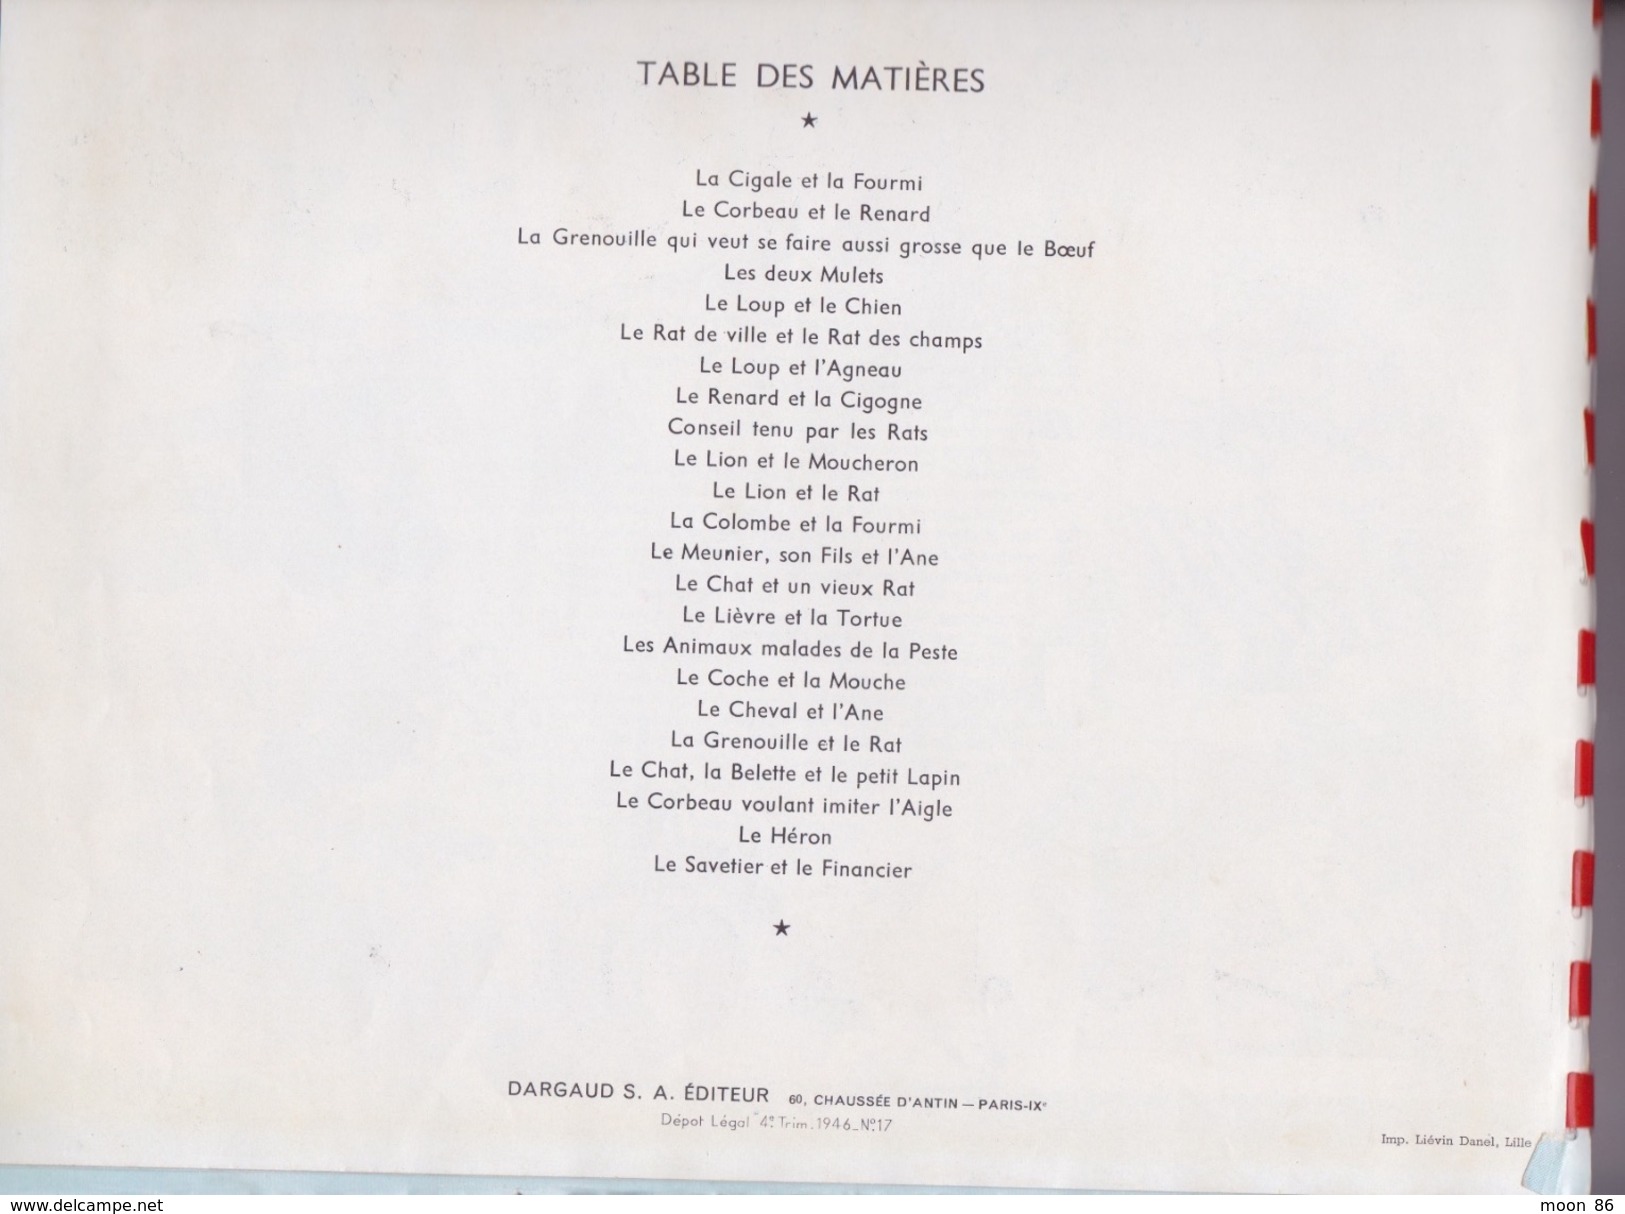 Les Fables De LA FONTAINE- Illustrateur Dessins Animés G LEBRET éd Dargaud 1946 - Collection Lectures Und Loisirs